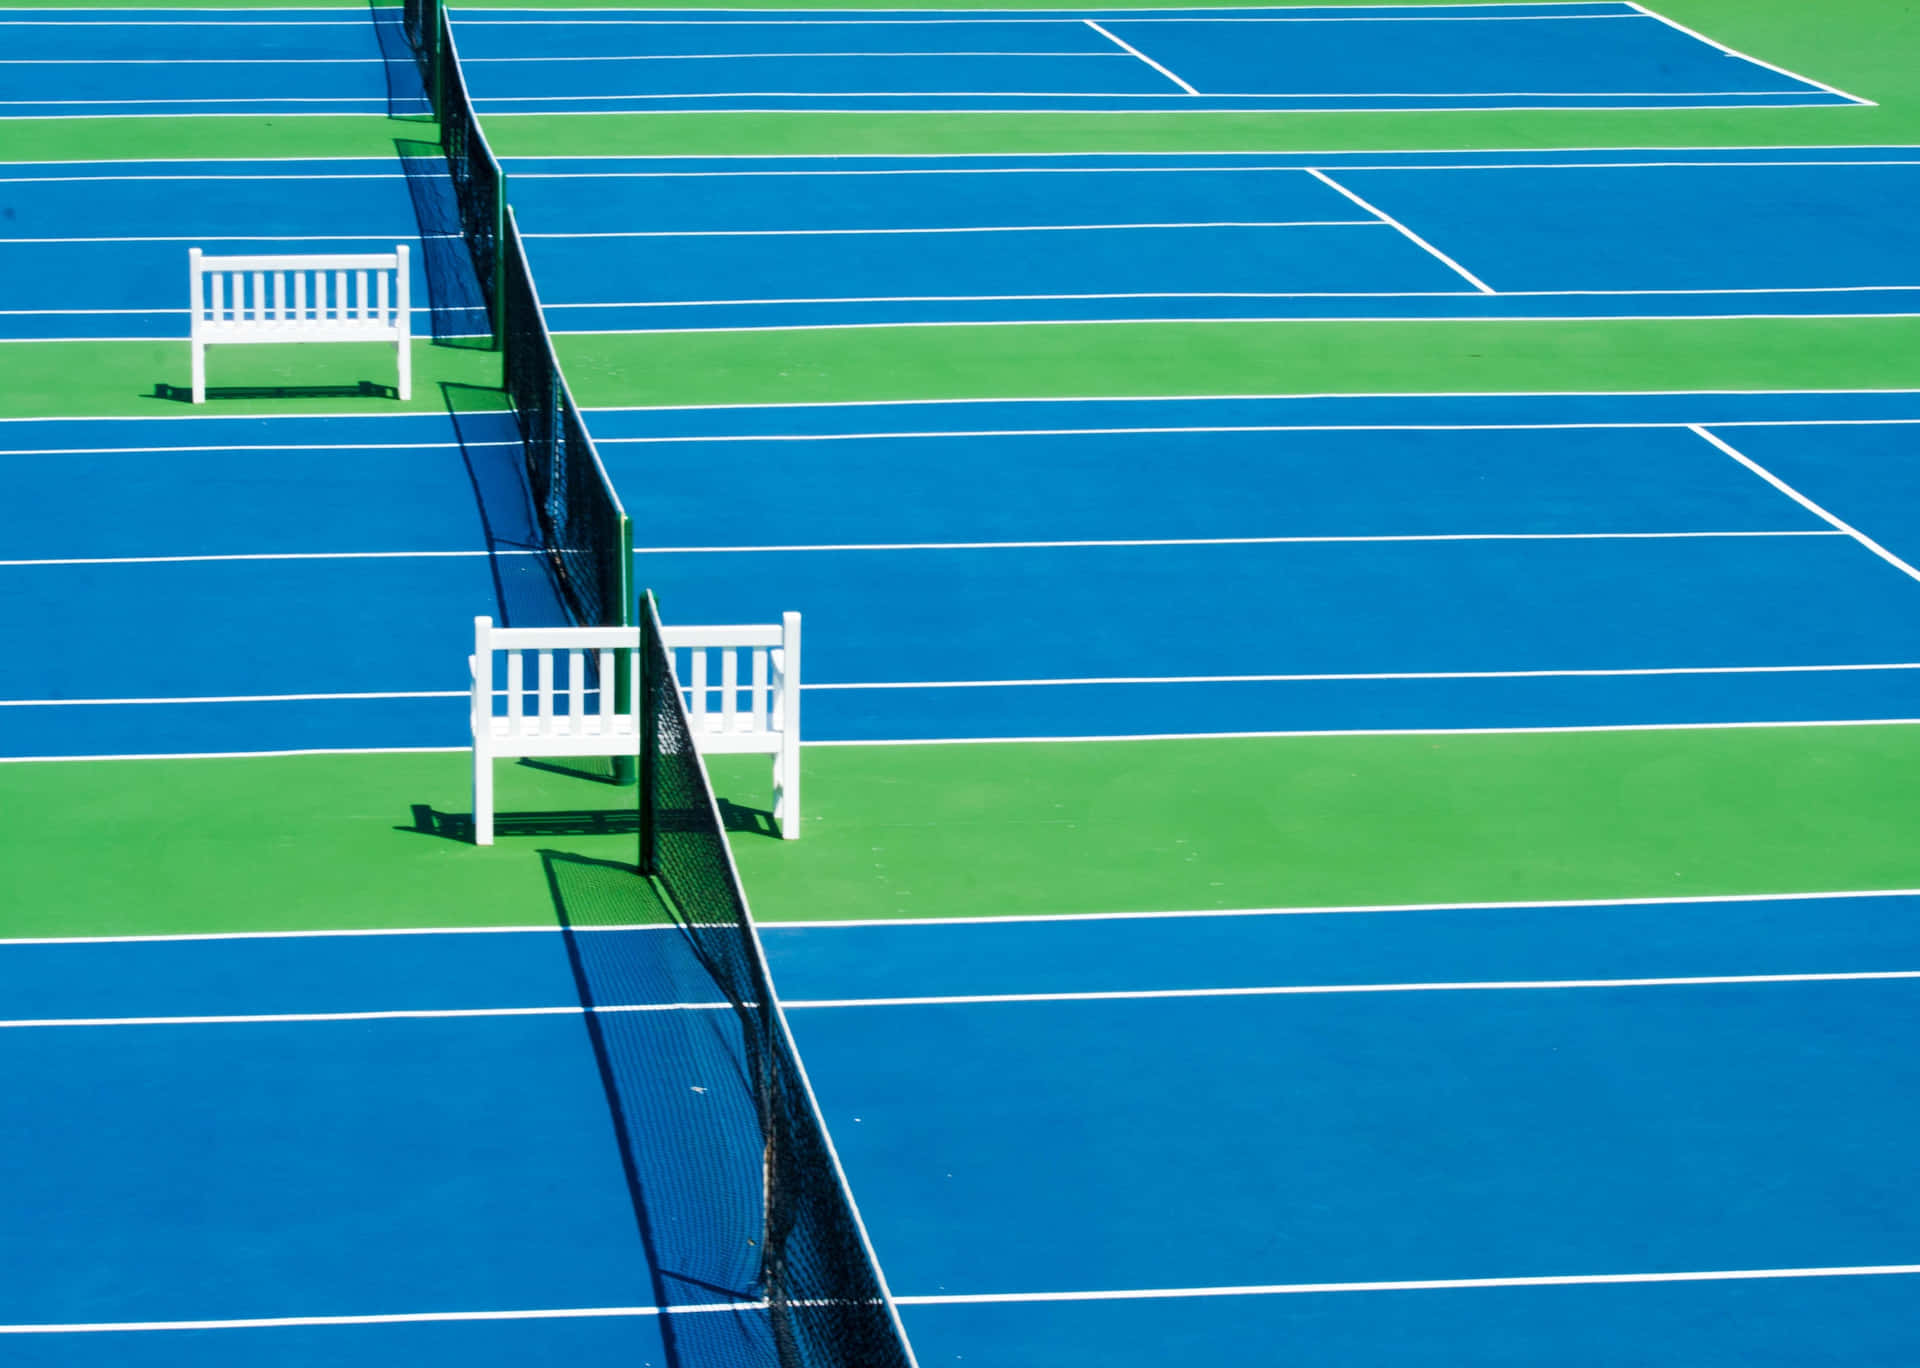 Tennisbilder